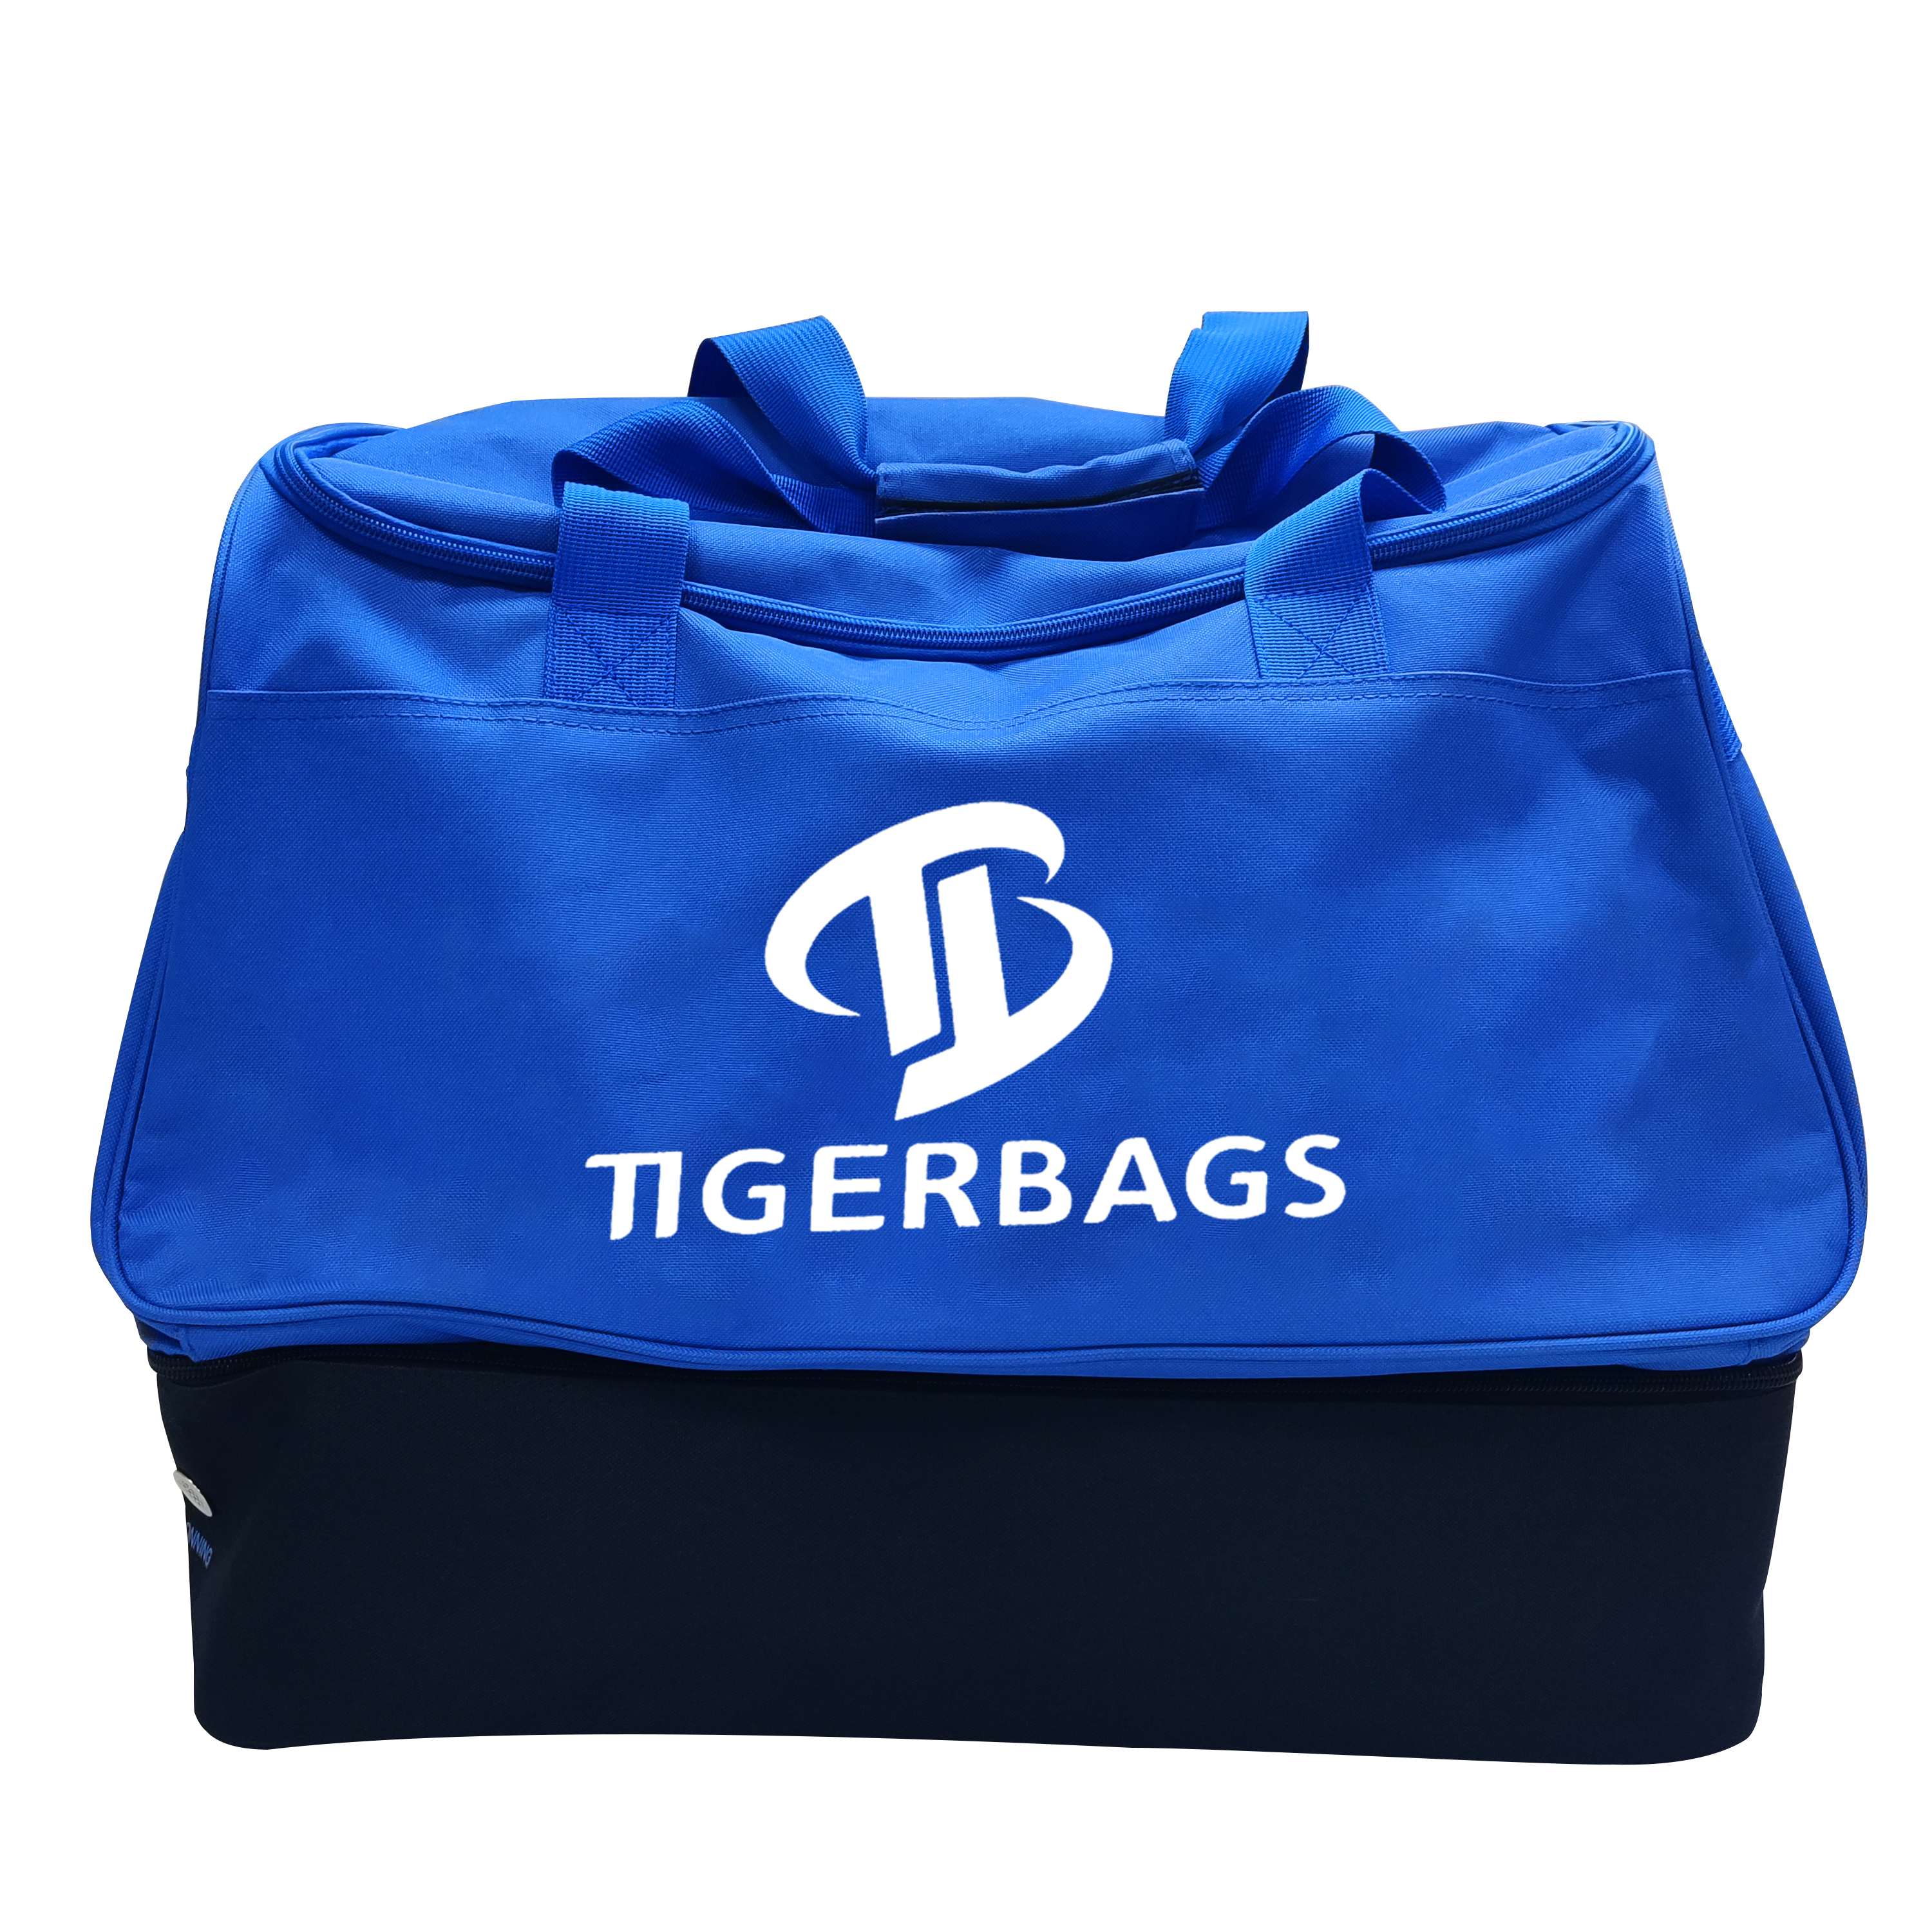 Pagdala sa imong kaugalingong shoe box travel bag Extra large capacity nga double layer travel bag